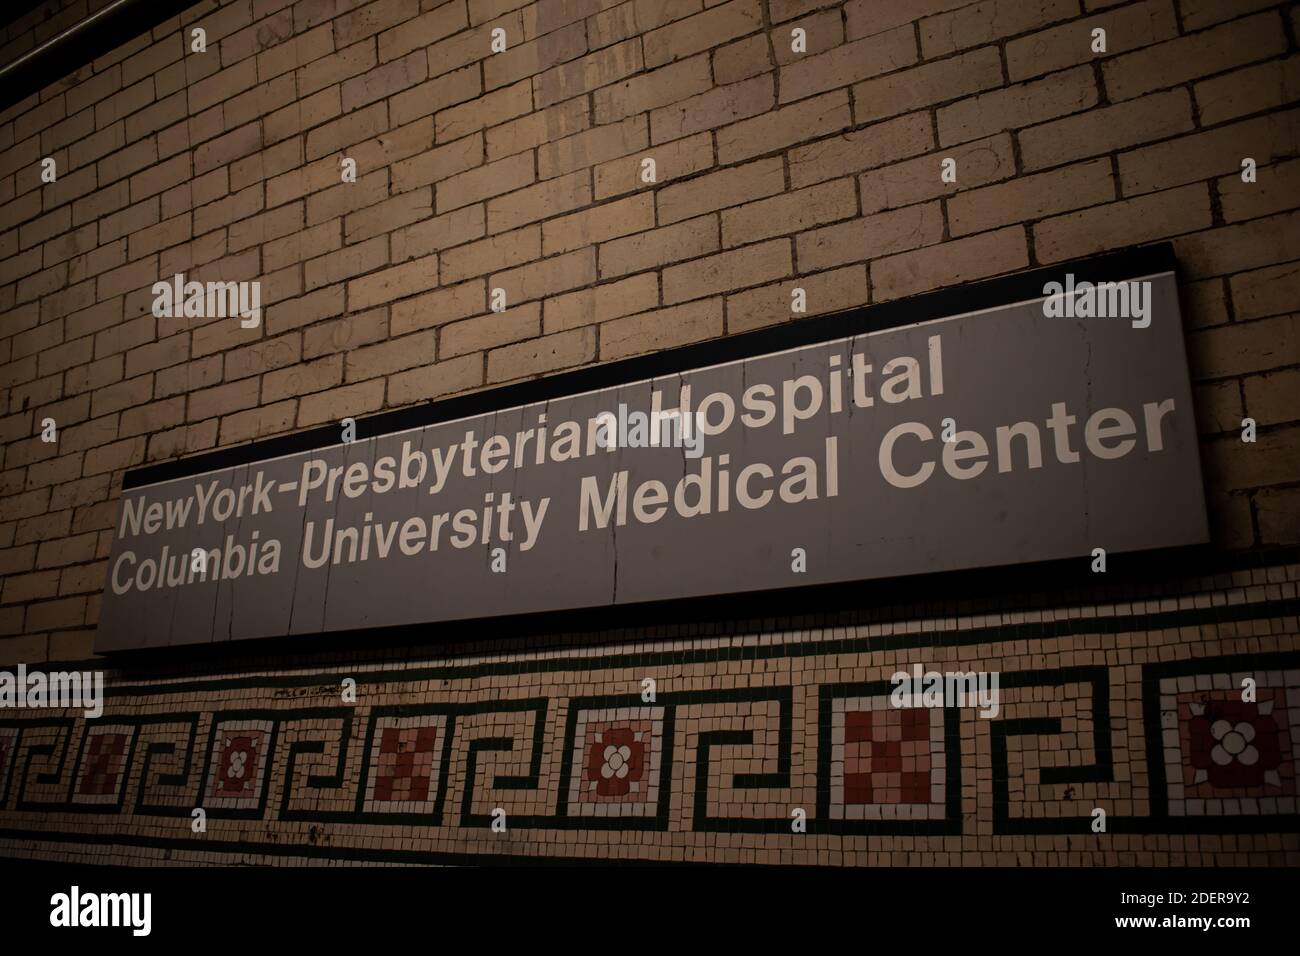 New York Presbyterian Hospital - Columbia University Medical Center Subway Sign in Washington Heights NY Stock Photo